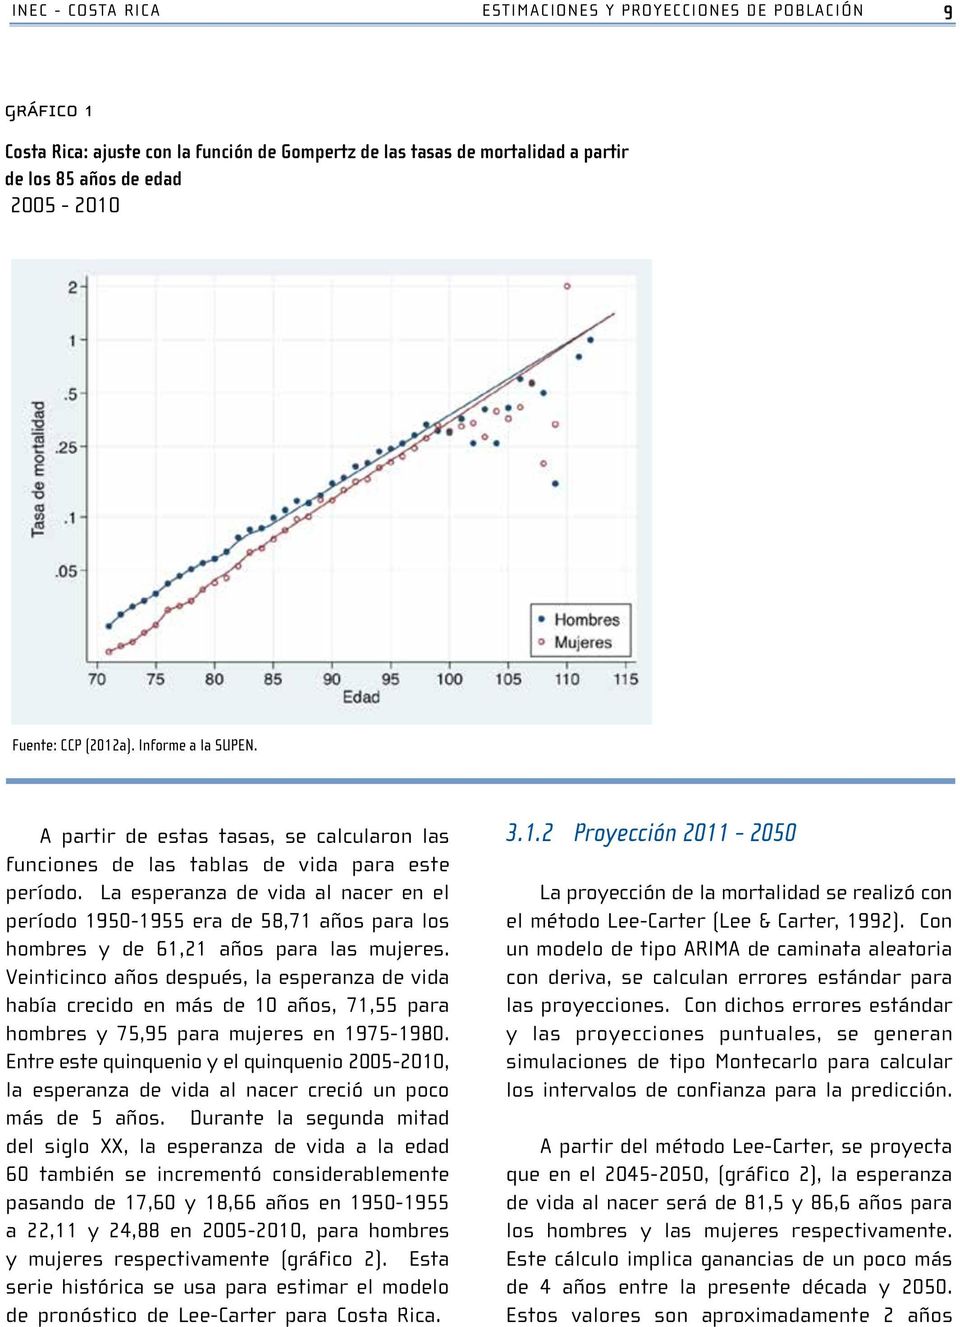 El gráfico 1 muestra el ajuste efectuado en el periodo 2005-2010. Gráfico 1 9 Costa Rica: ajuste con la función de Gompertz de las tasas de mortalidad a partir de Gráfico los 85 años 1.